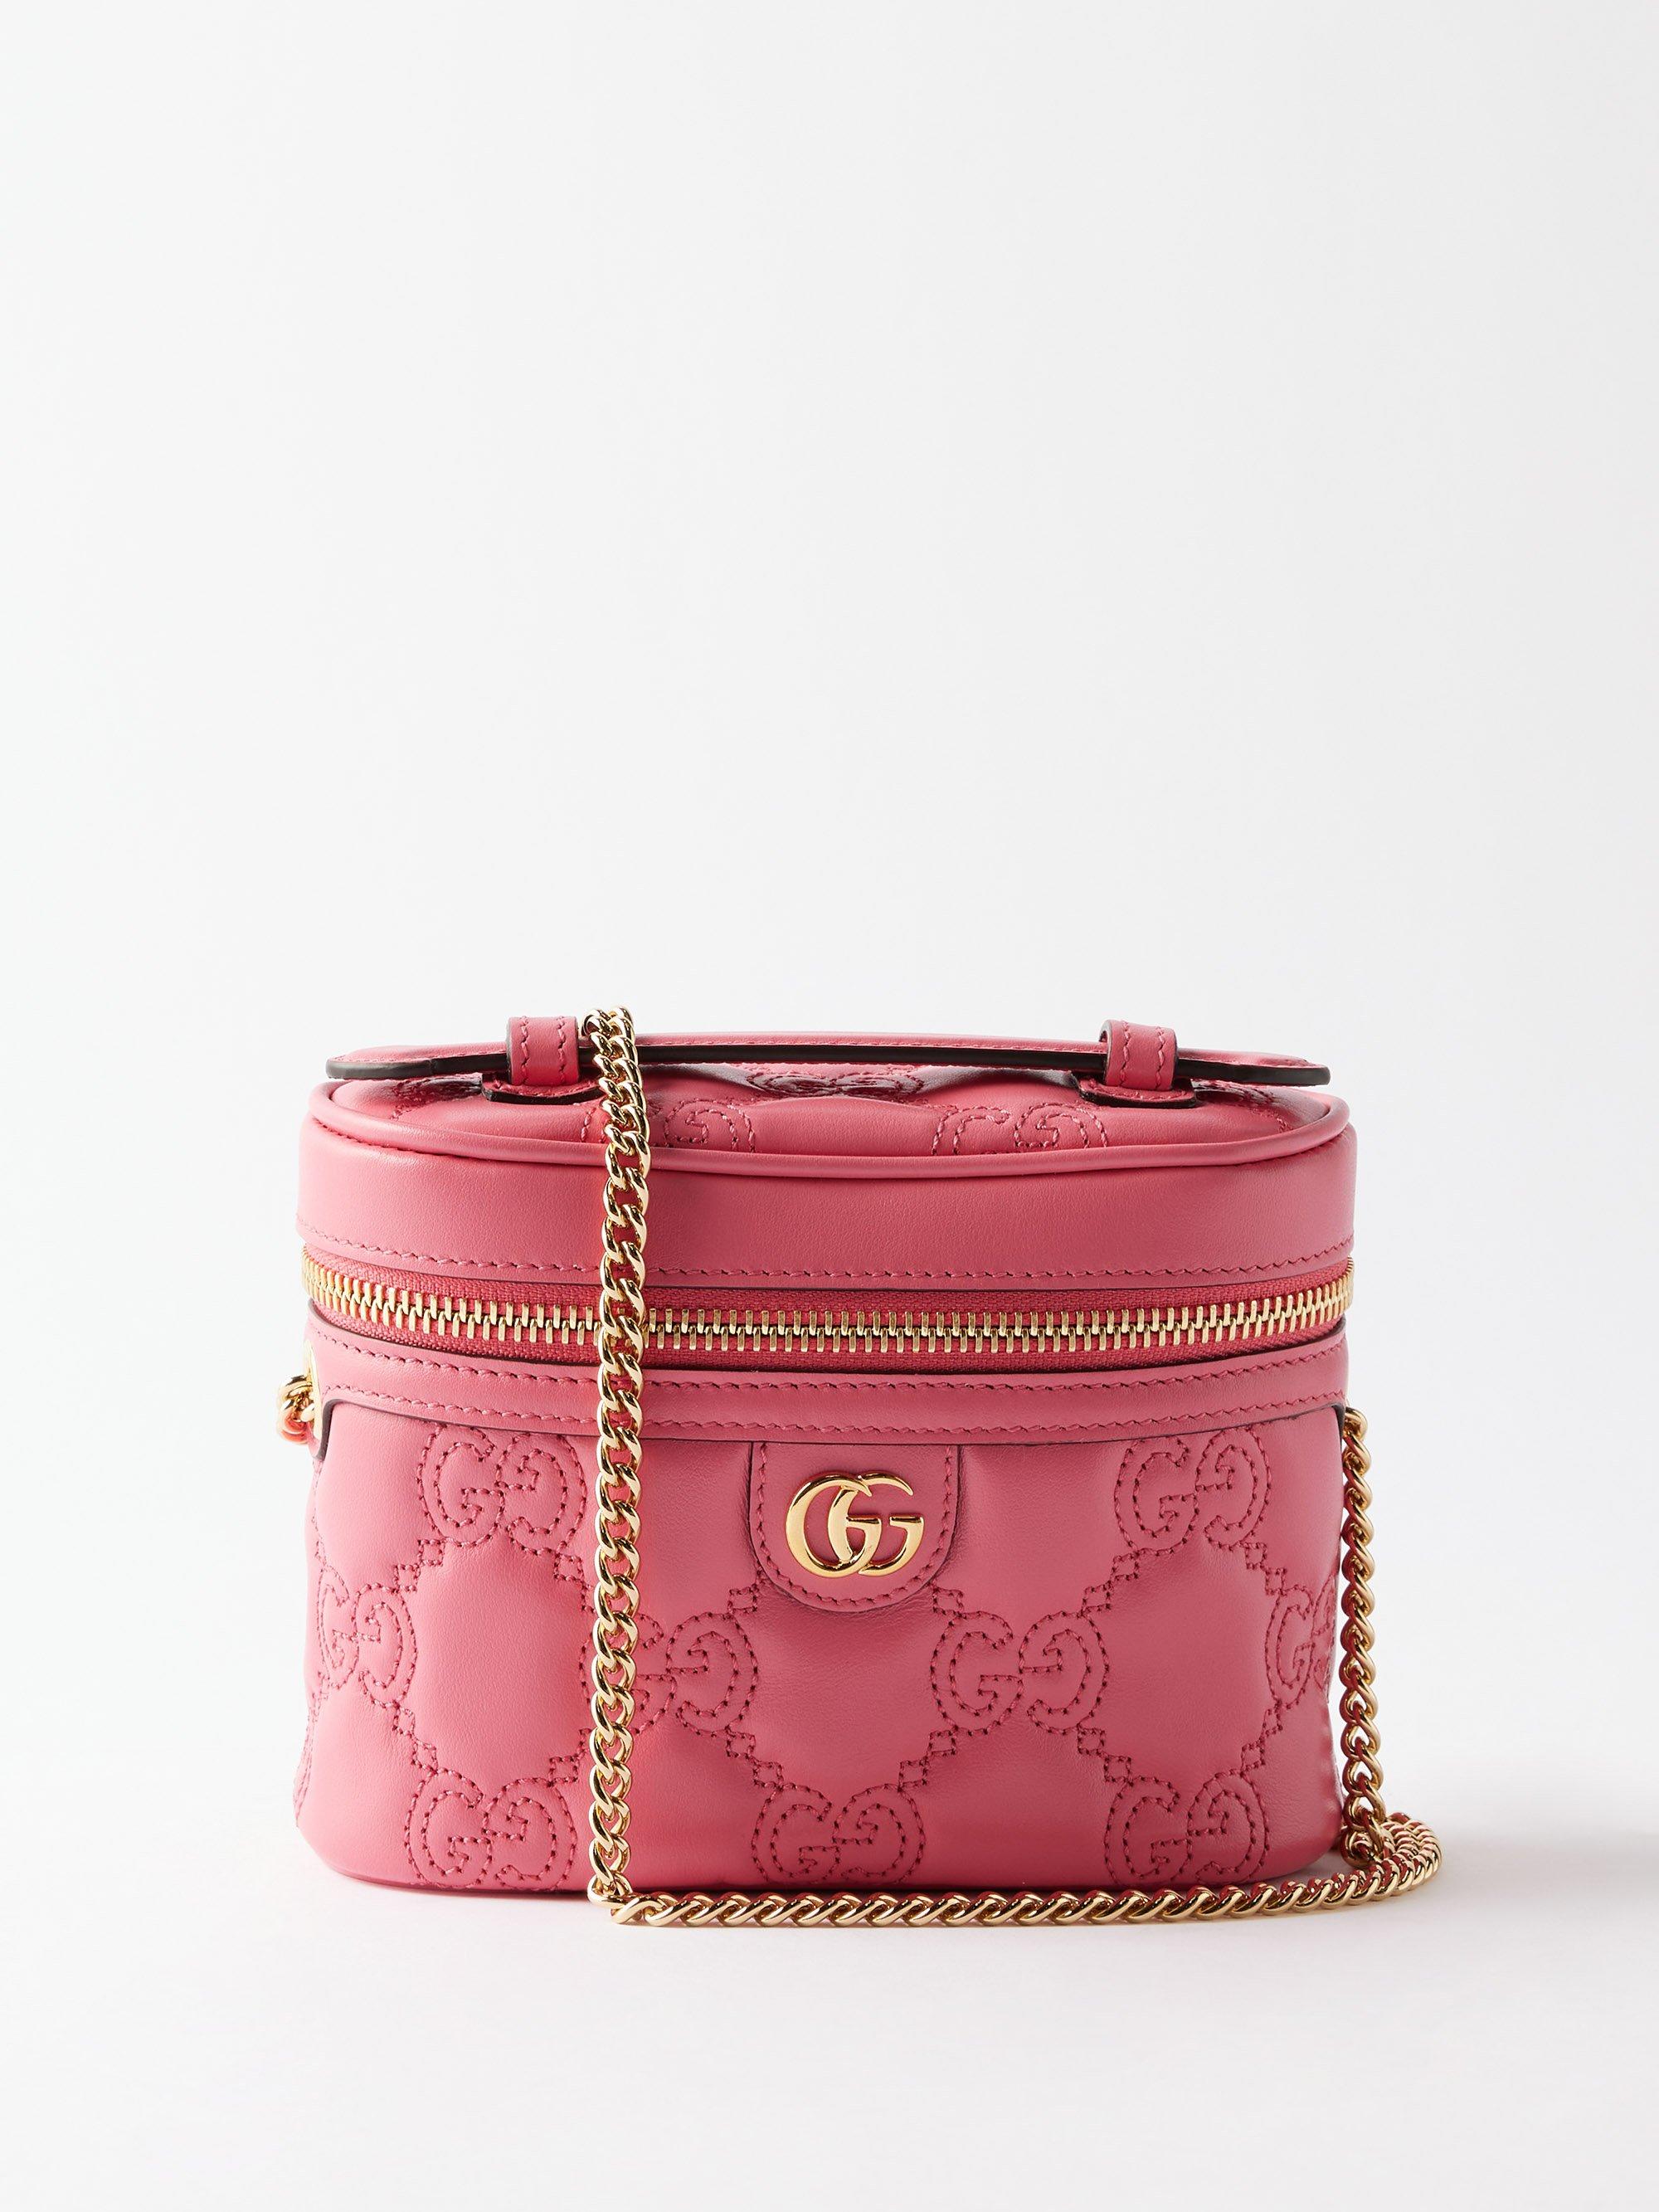 GG Matelasse Leather Shoulder Bag in Pink - Gucci